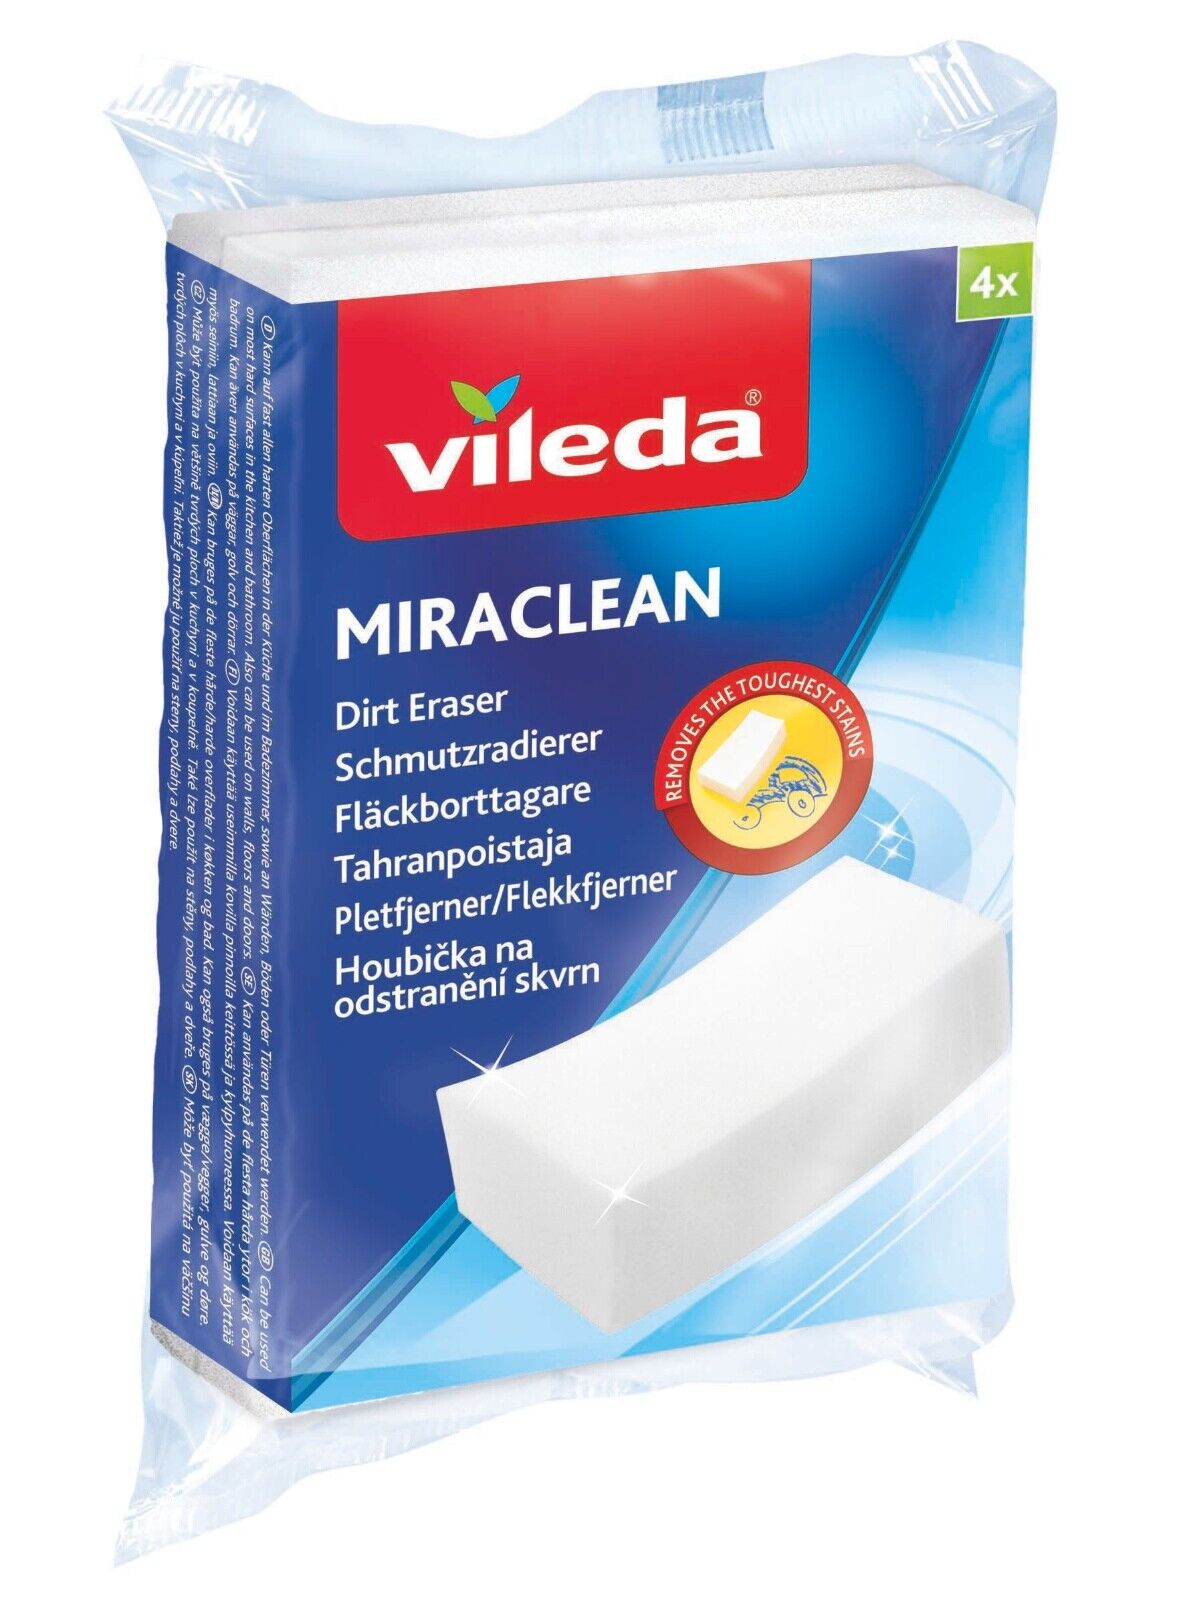 Vileda® Miraclean 4er Packung Schmutzradierer